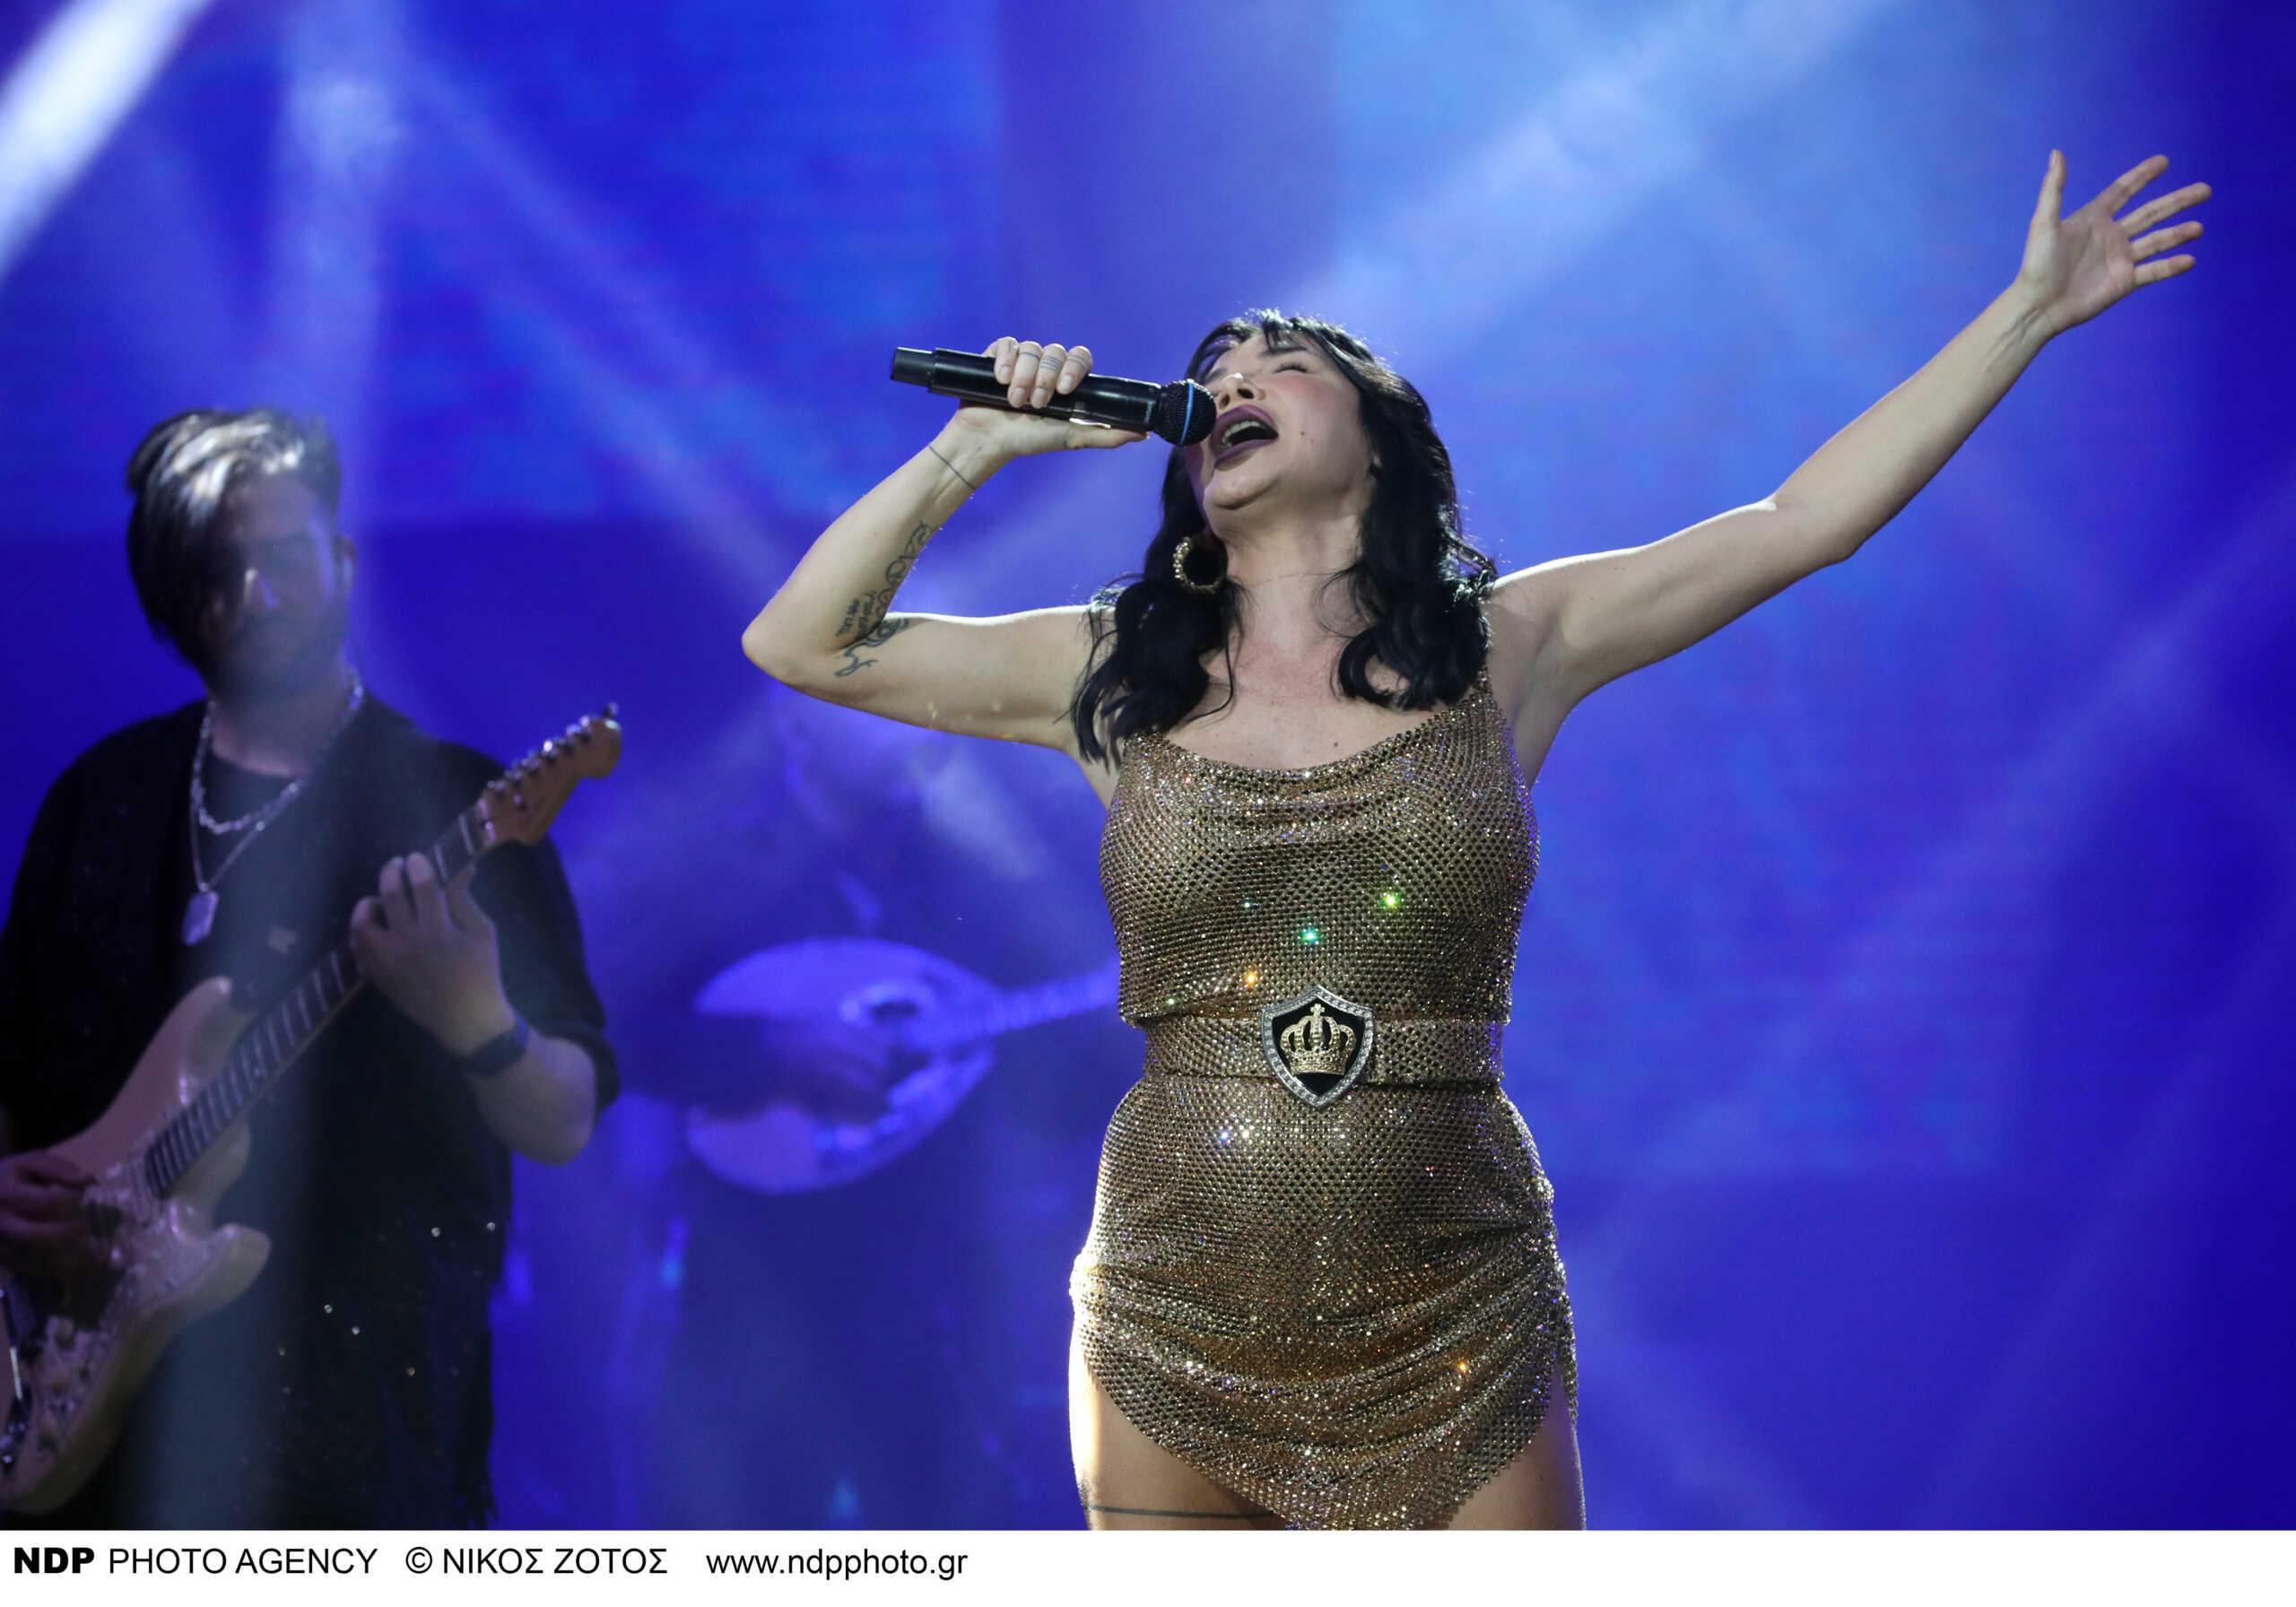 Η Πάολα για την απόφασή της να τραγουδήσει μετά το δυστύχημα στα Τέμπη: Έγινα εγώ αυτή που δεν έχει αισθήματα